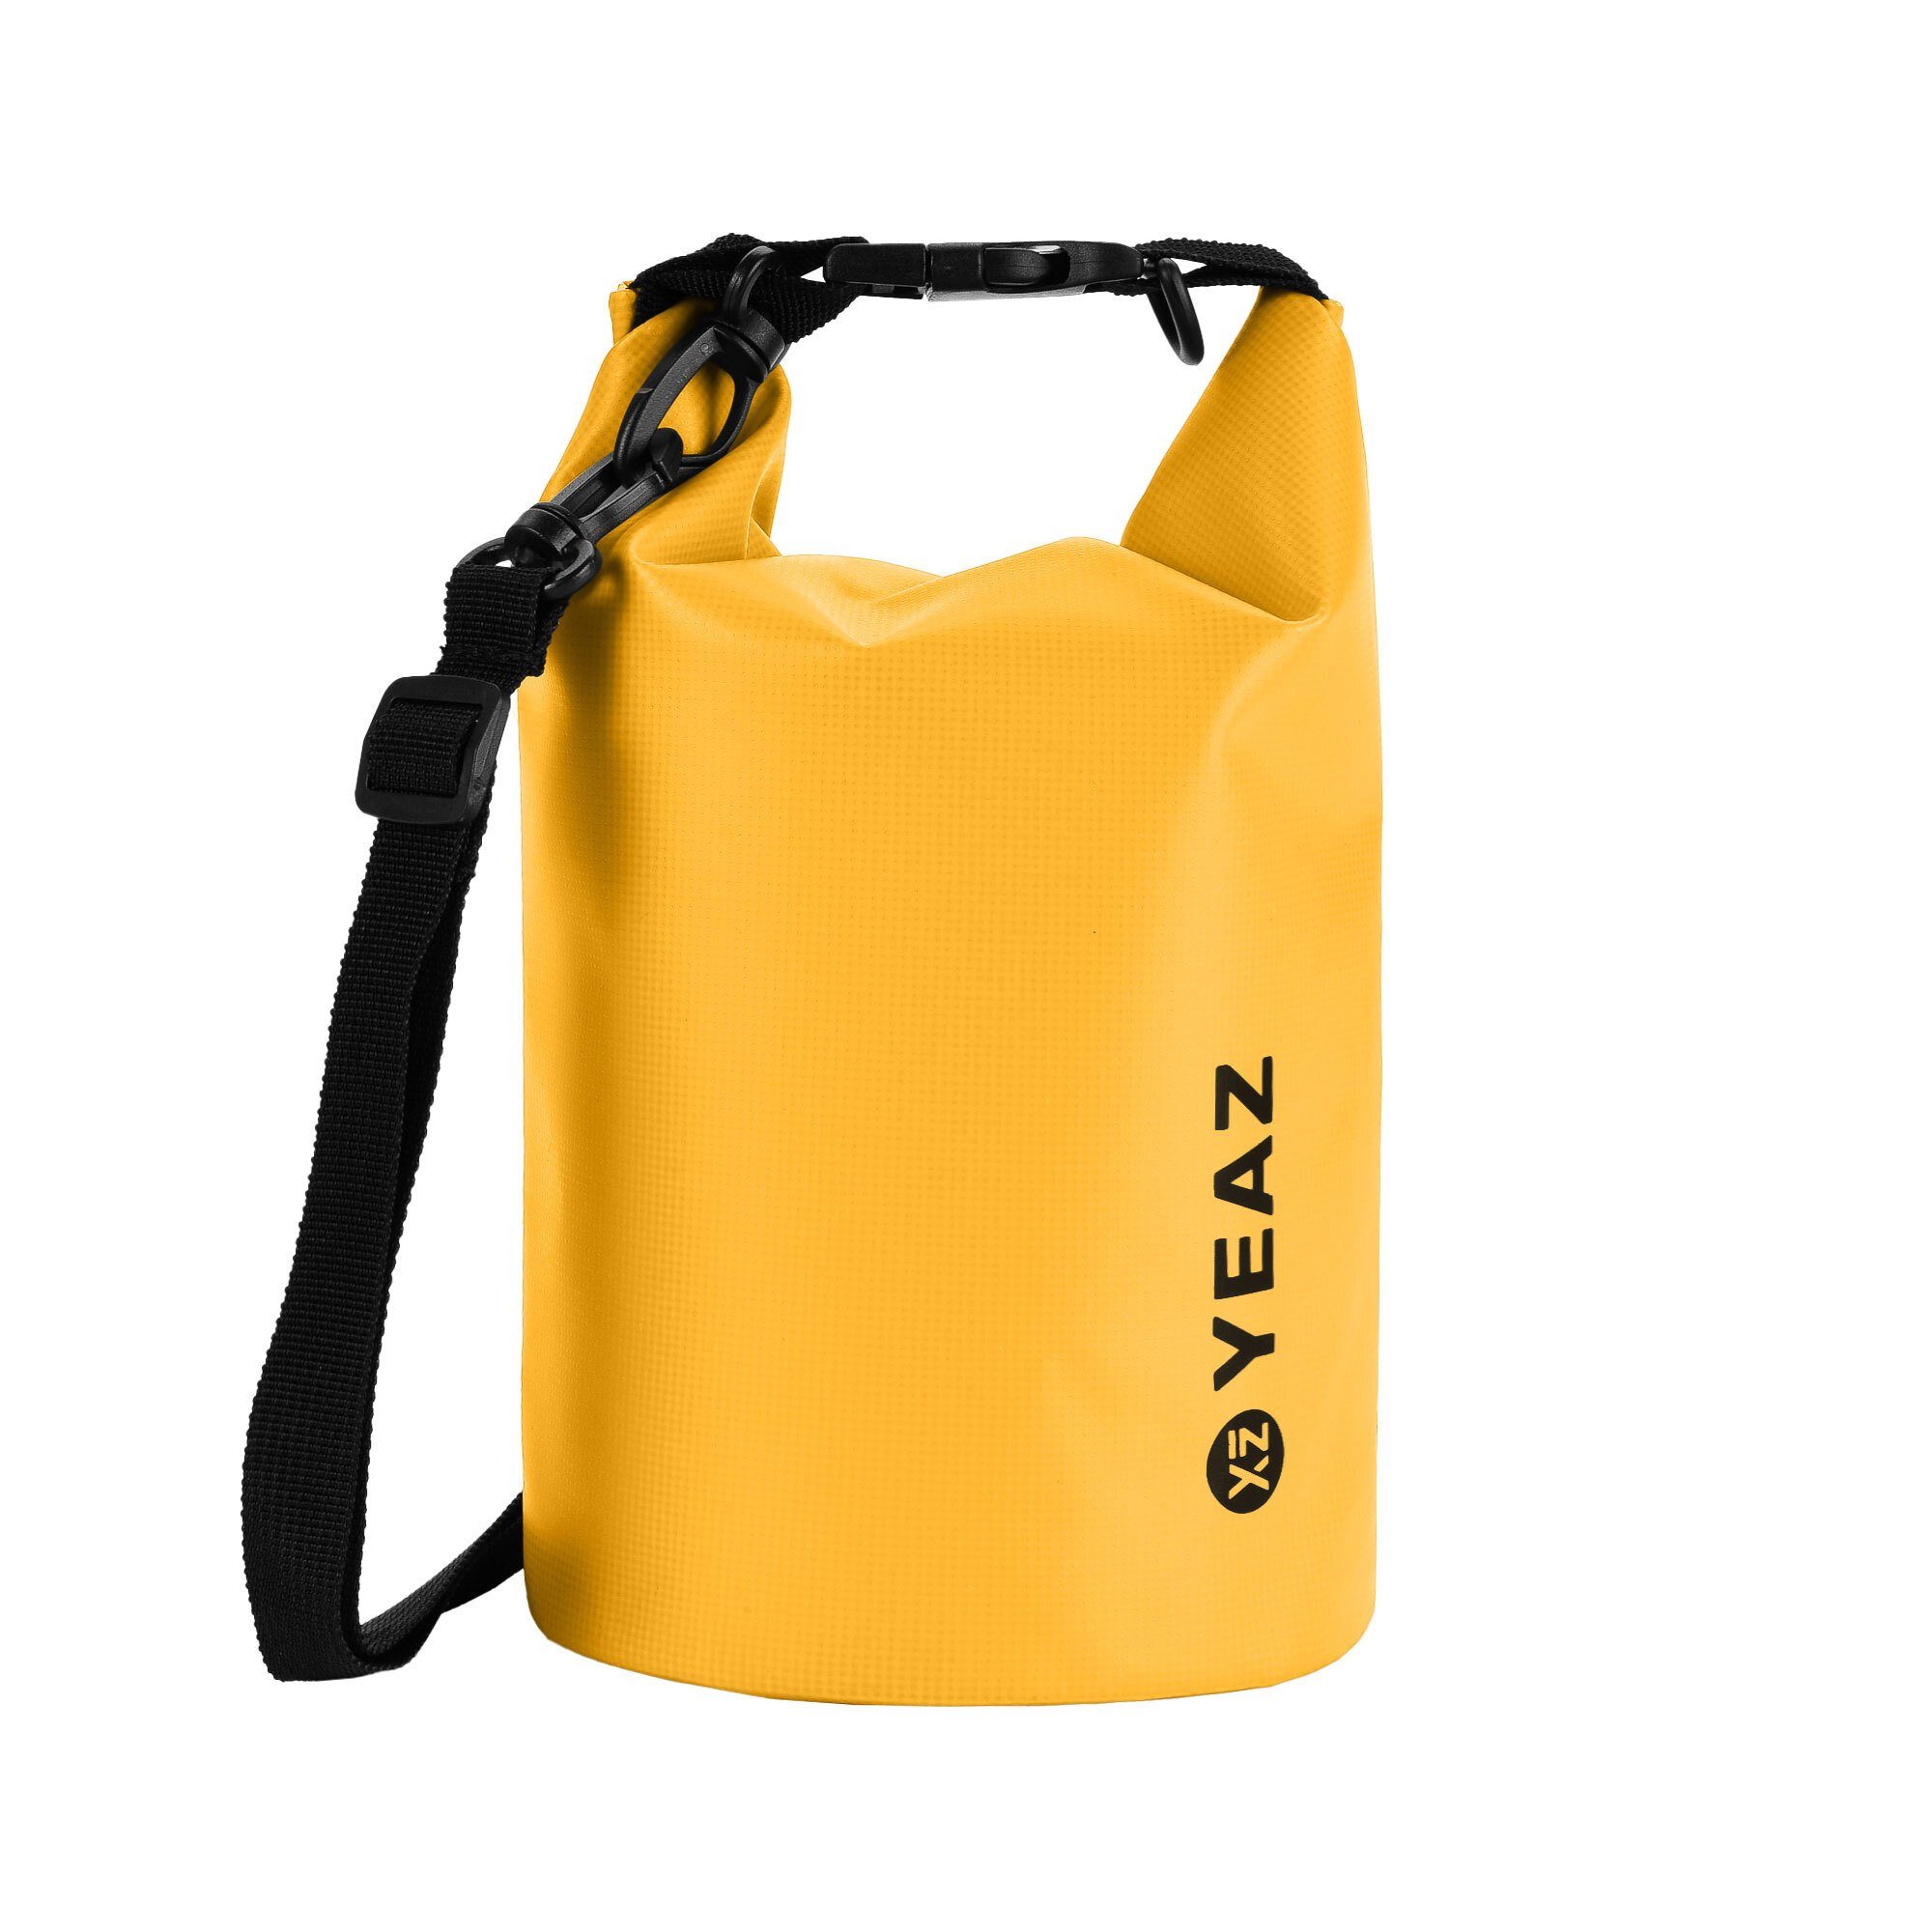 YEAZ Drybag ISAR wasserfester packsack 1,5l gelb | Seesäcke